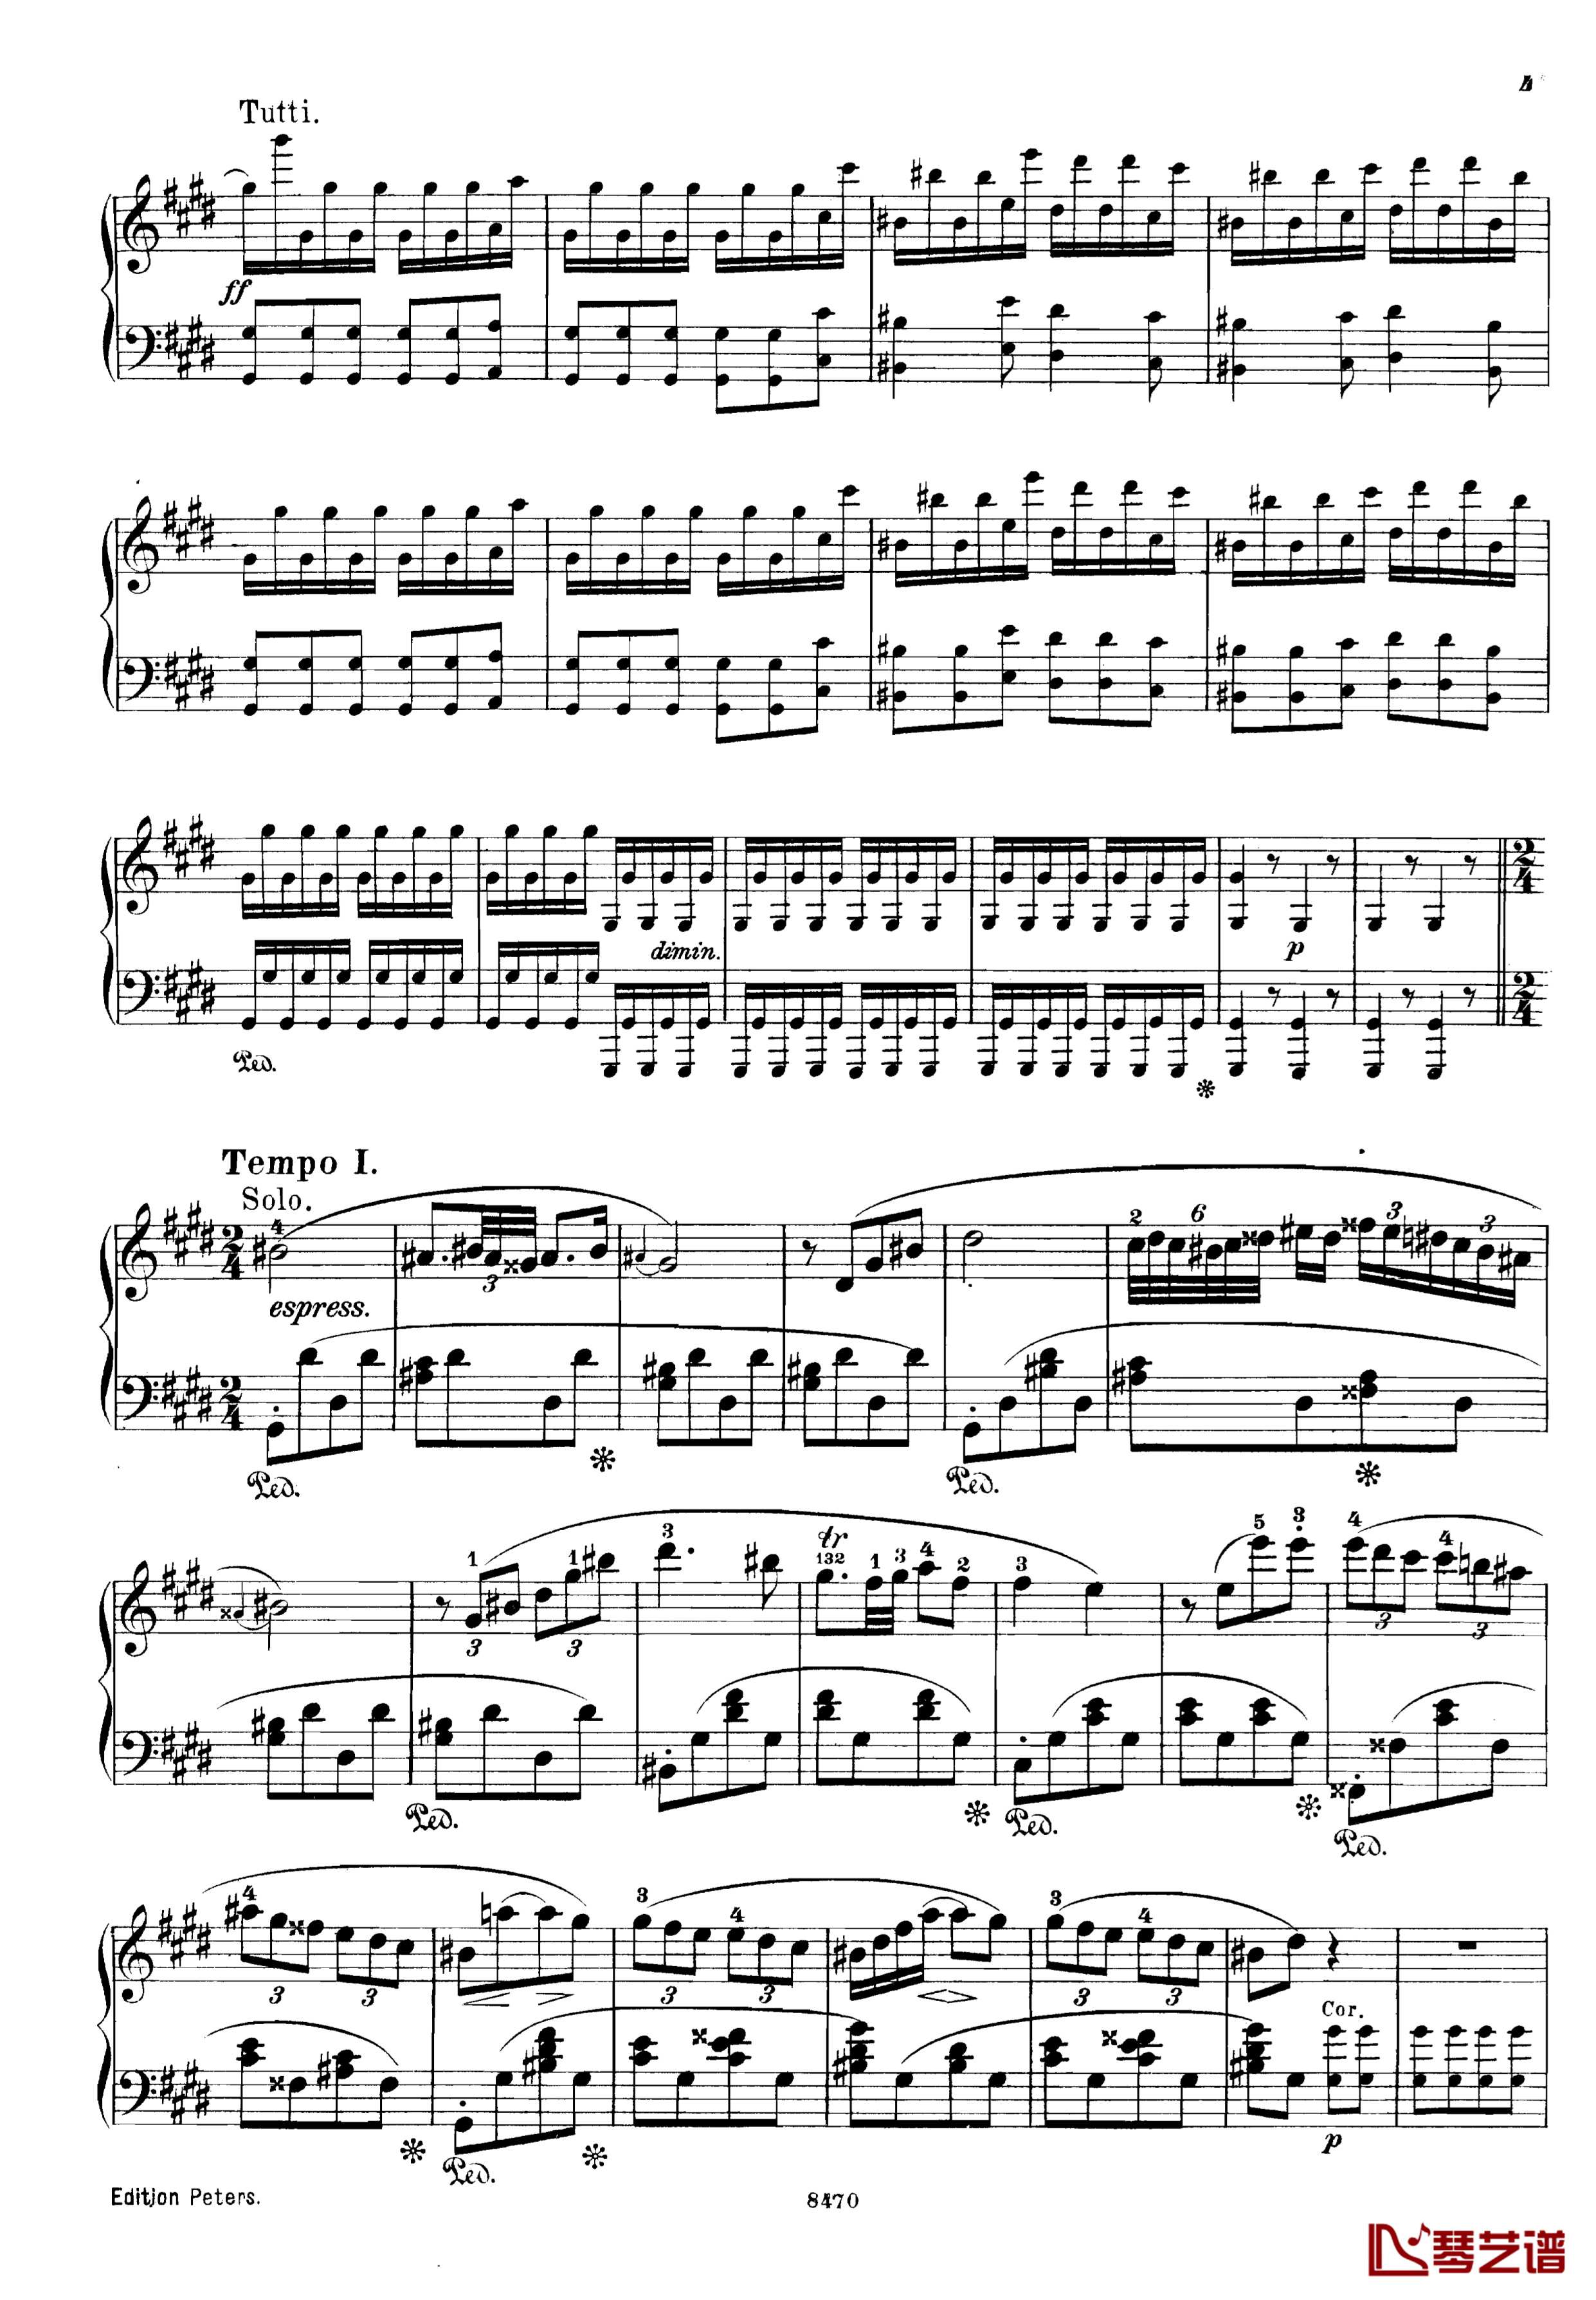 升c小调第三钢琴协奏曲Op.55钢琴谱-克里斯蒂安-里斯41